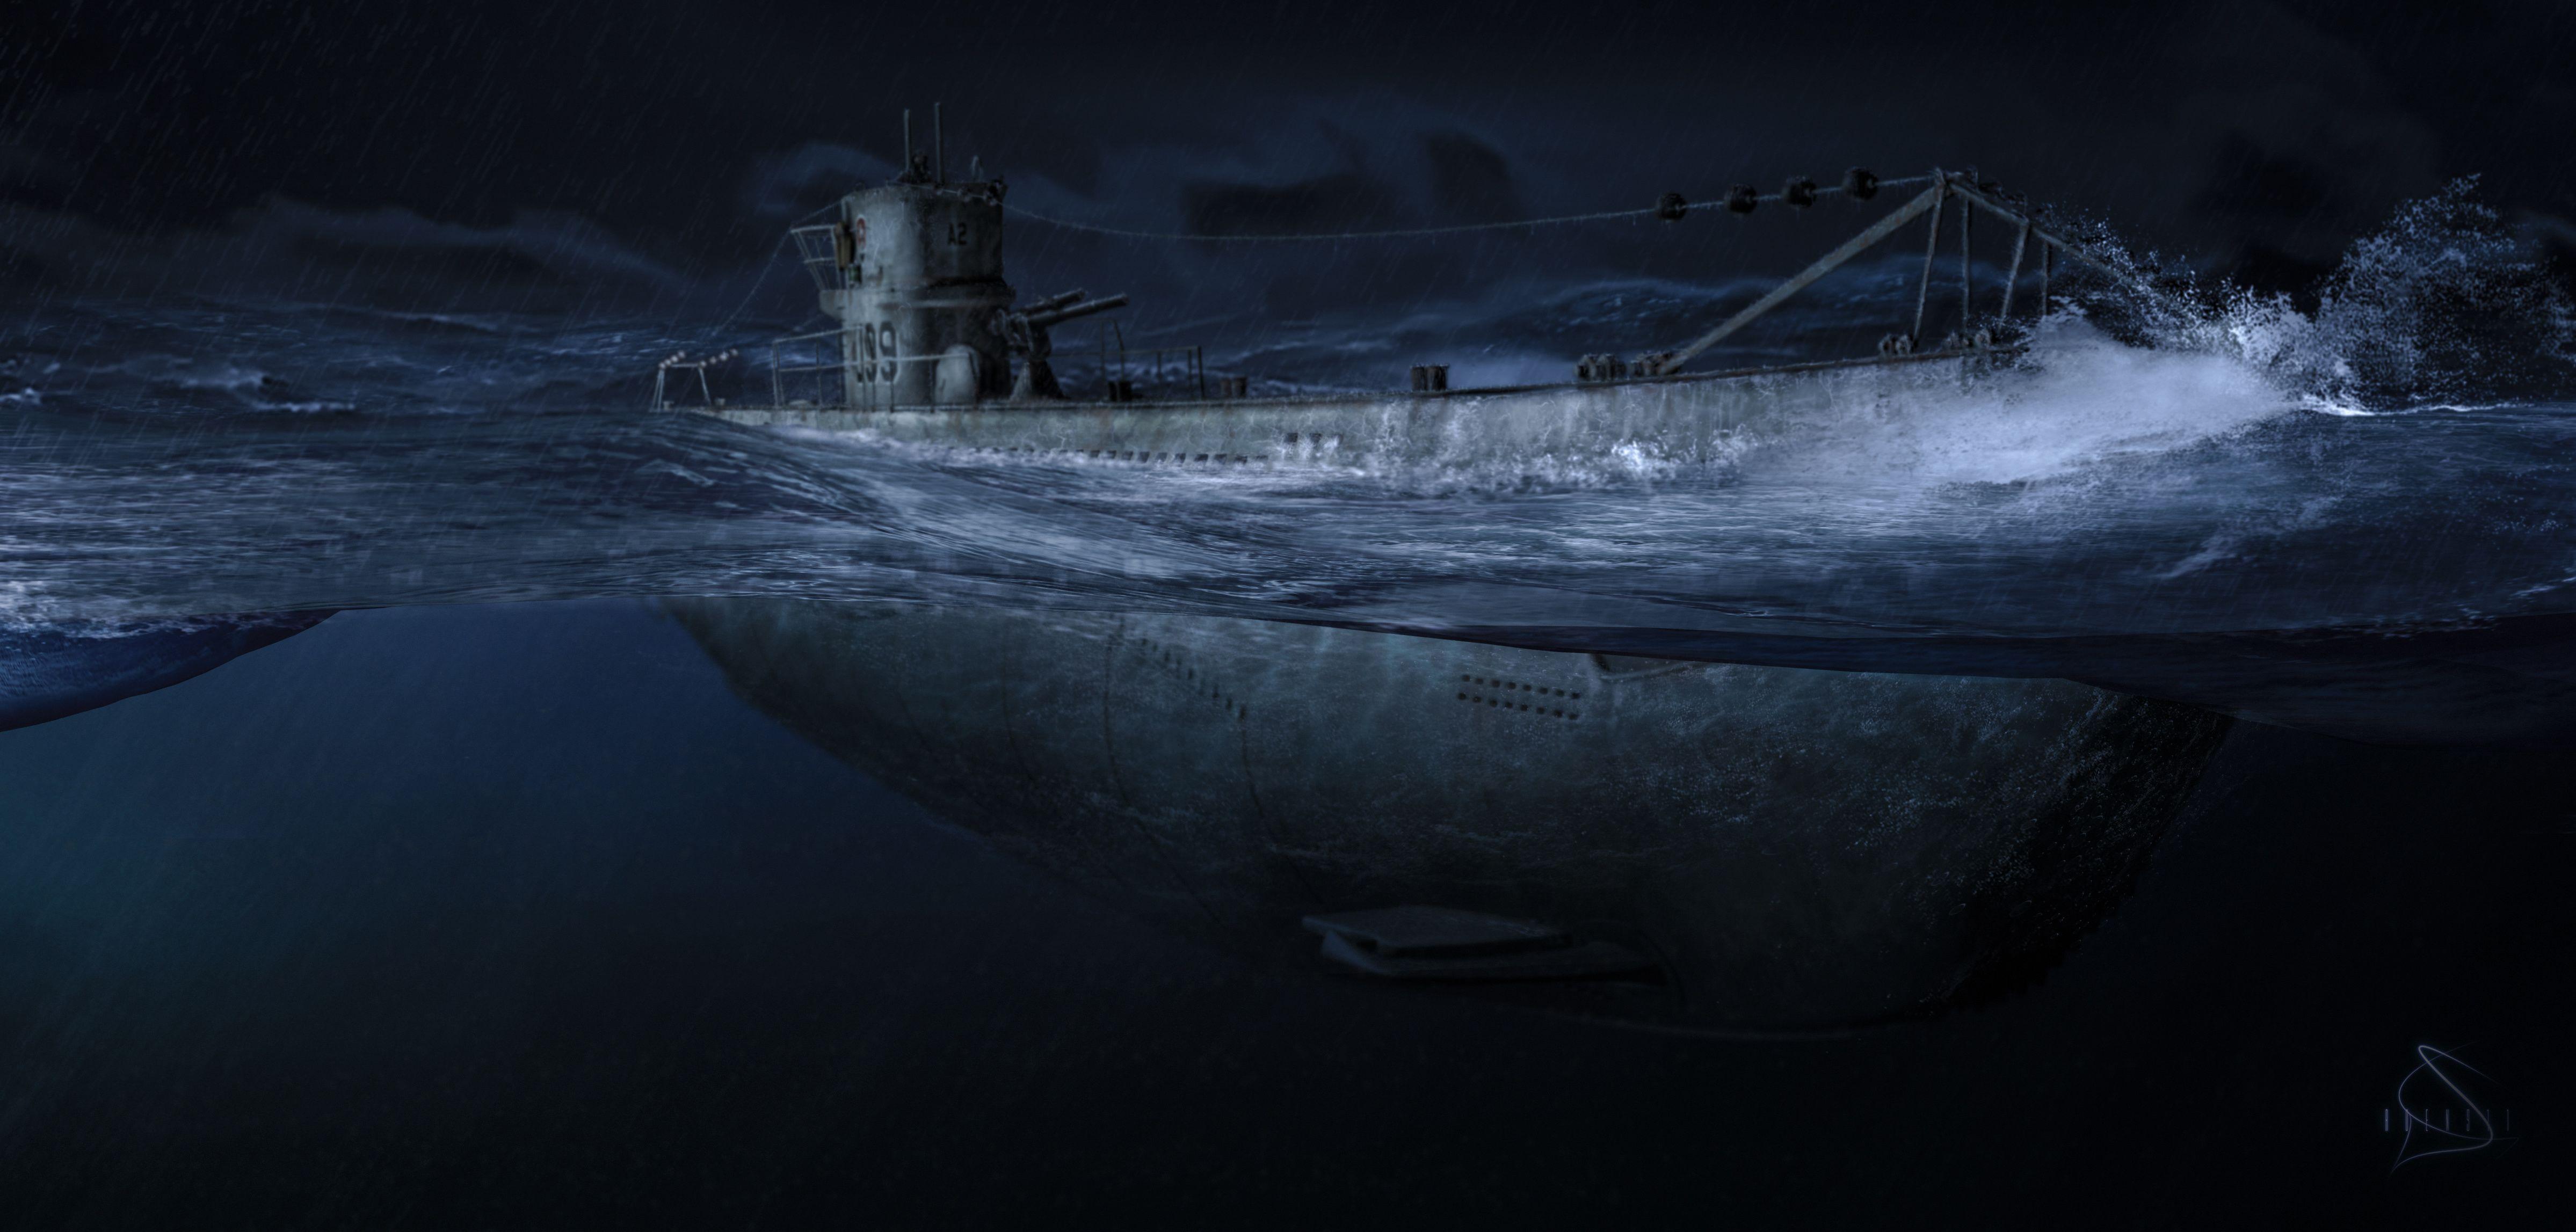 Hình nền quân sự nghệ thuật tàu ngầm đêm 4797x2295.  4797x2295.  228388. Hình nềnUP